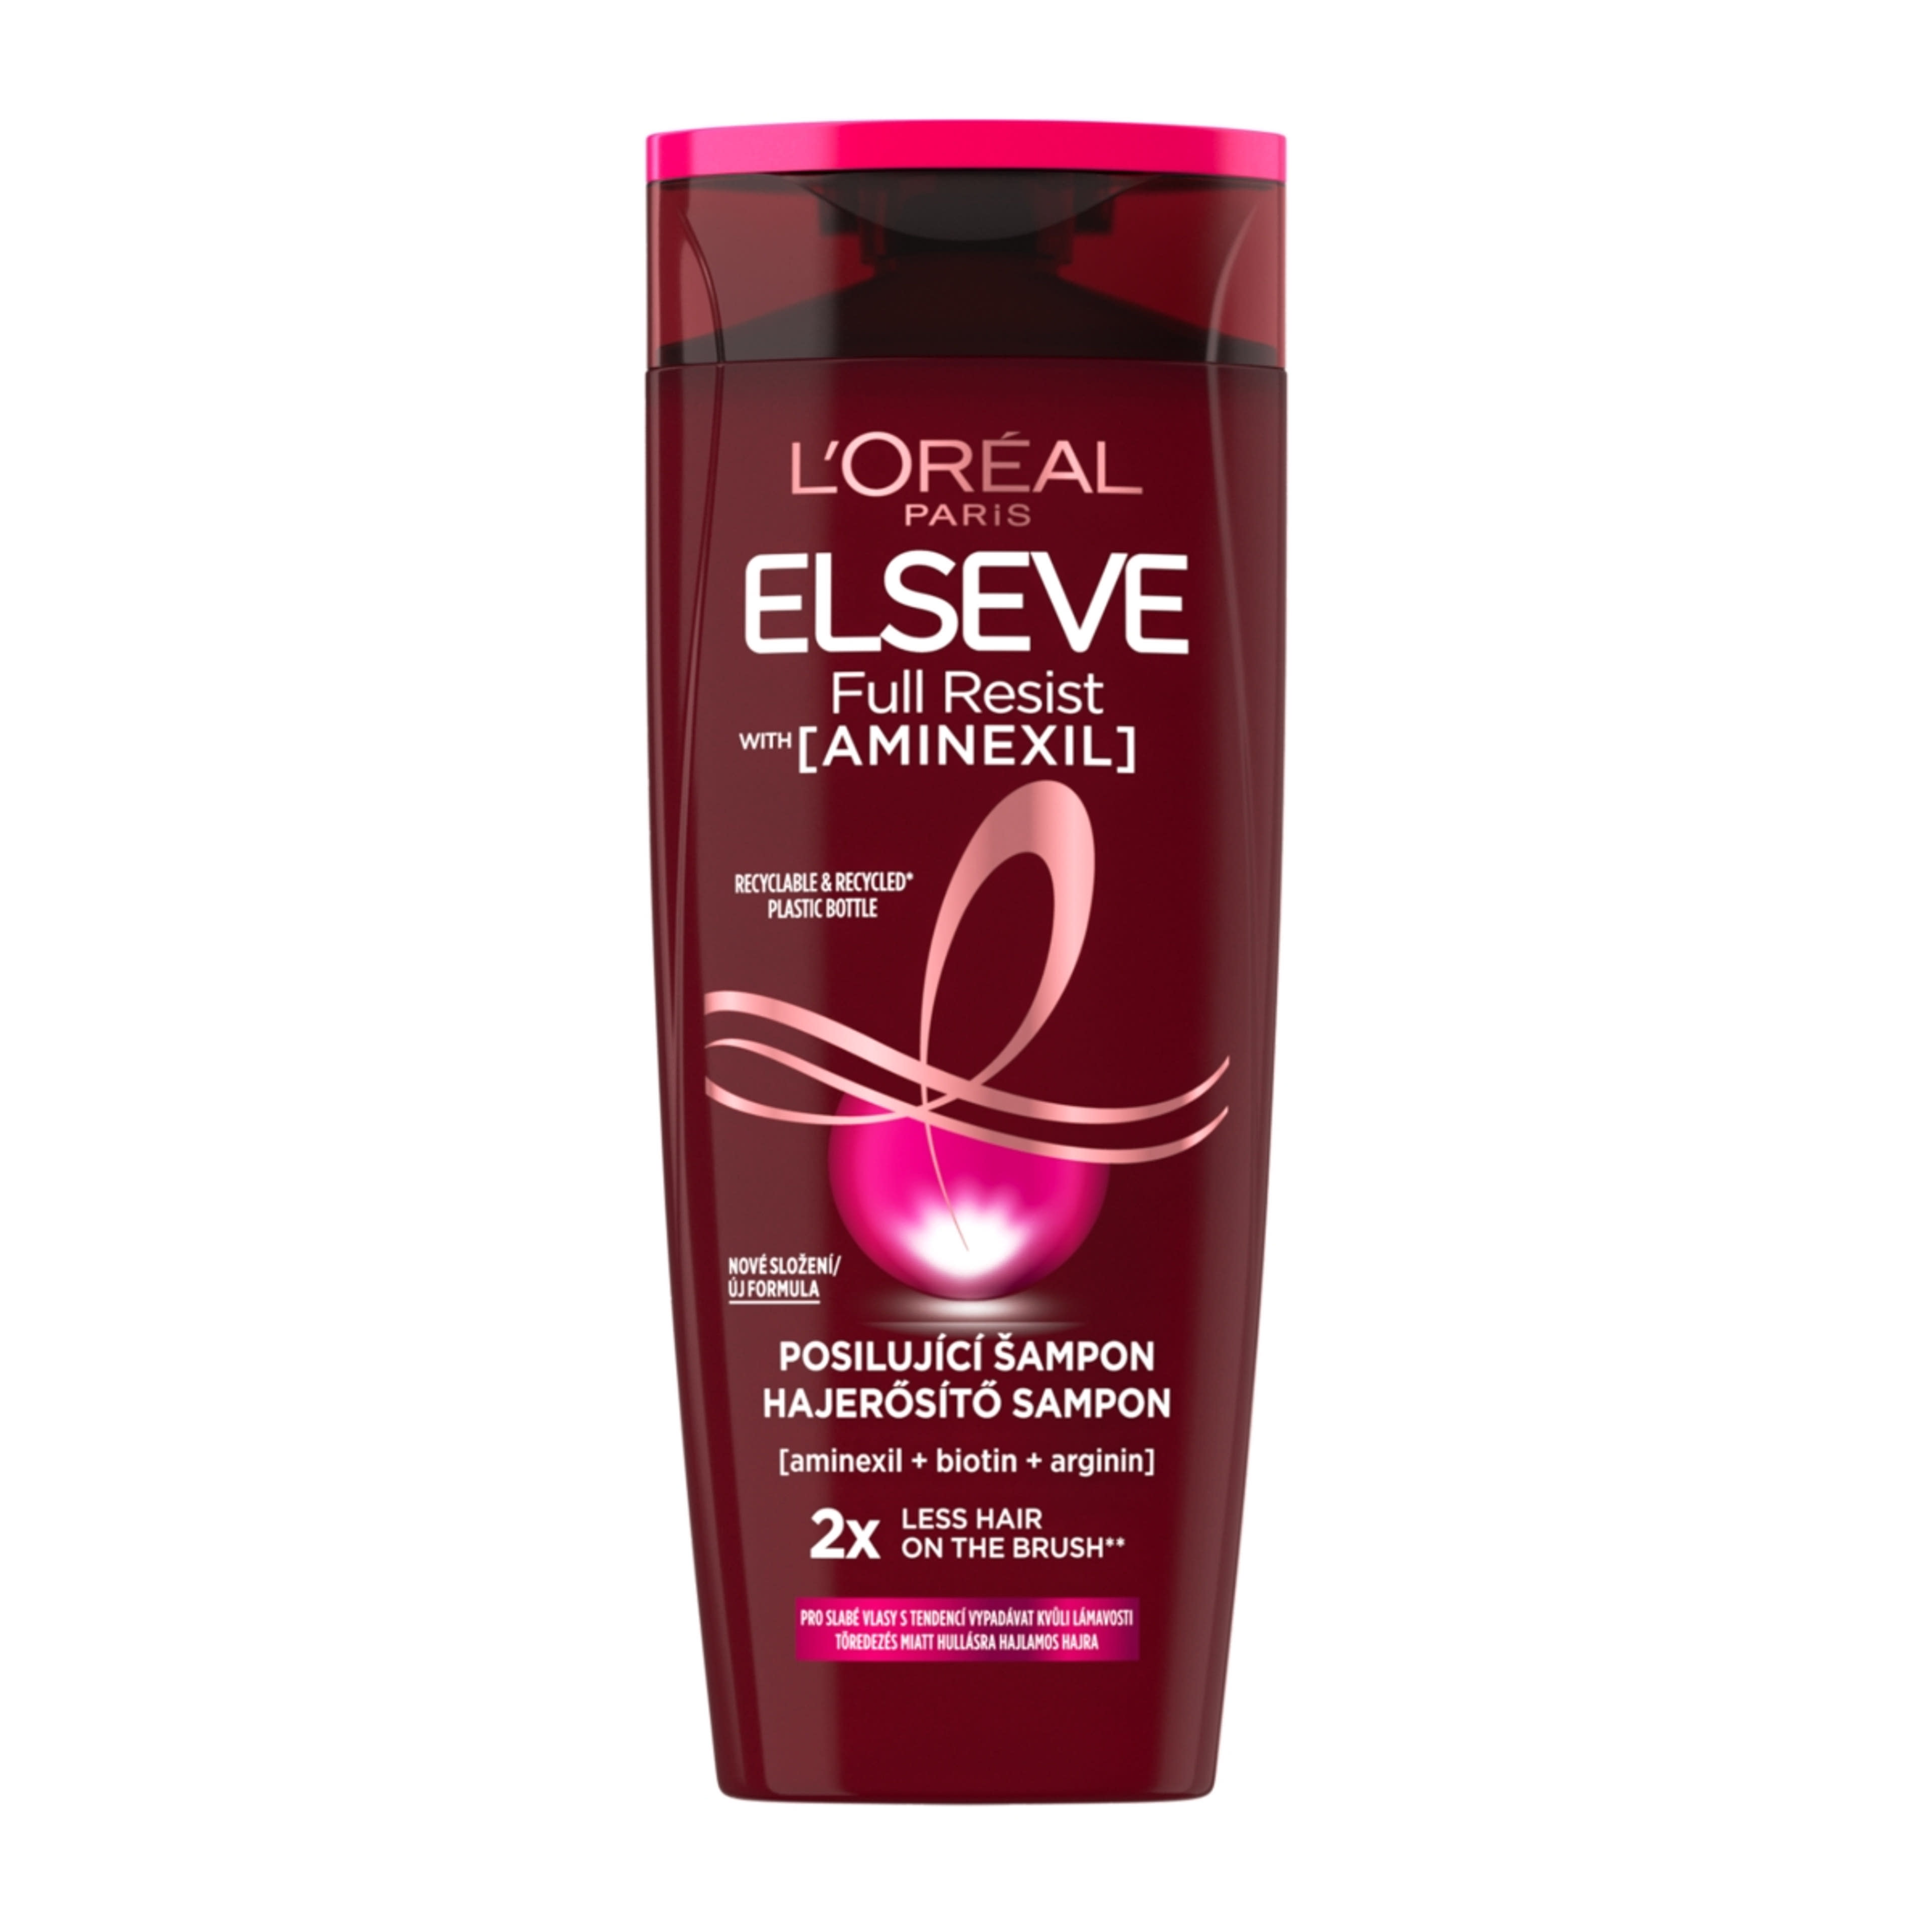 L'Oréal Paris Elseve Full Resist hajerősítő sampon - 250 ml-1